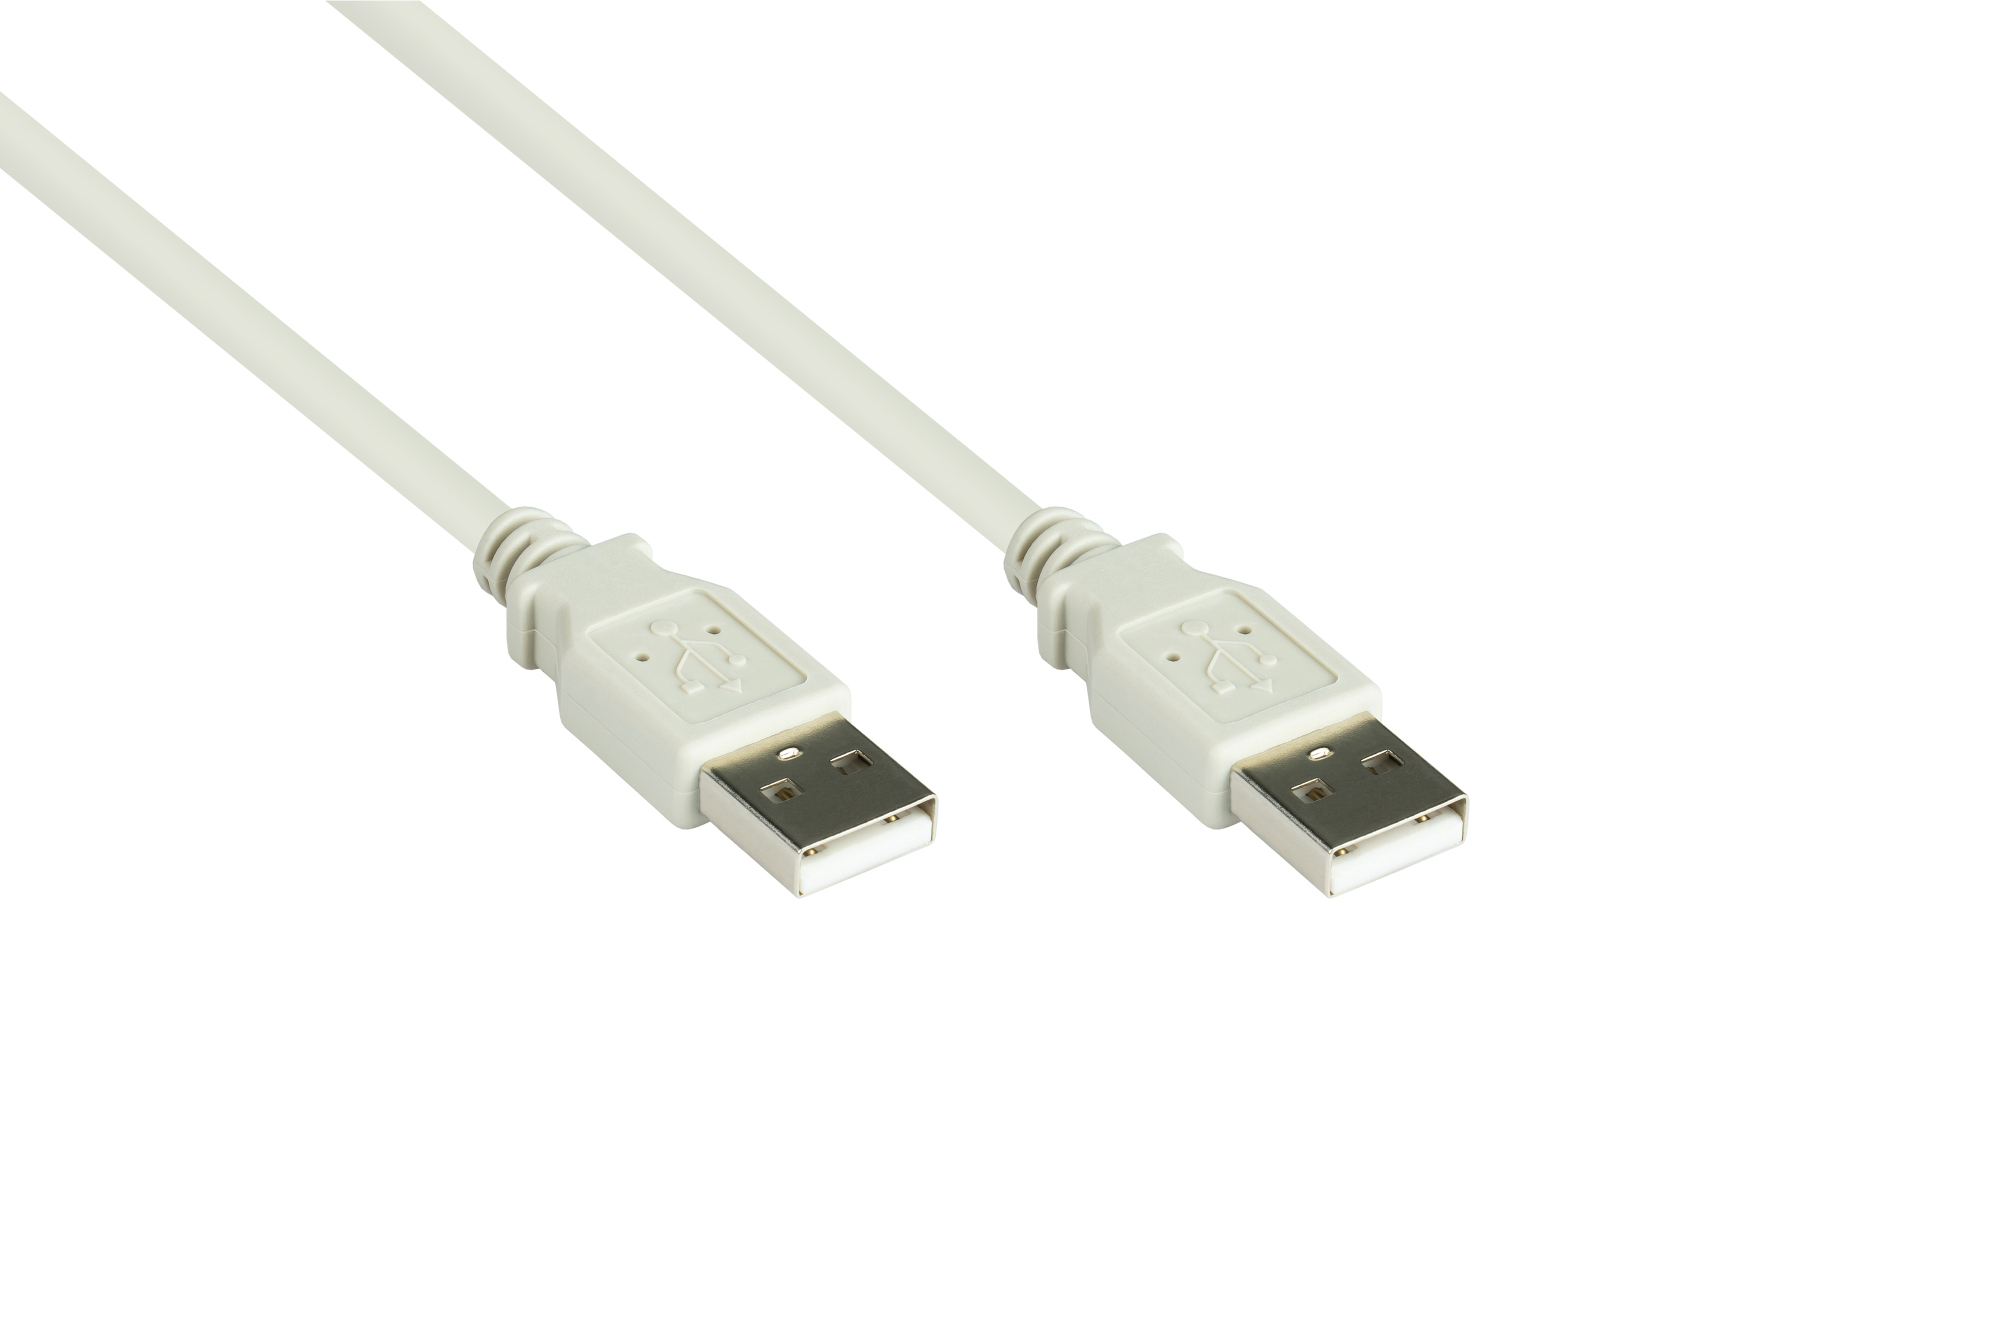 Anschlusskabel USB 2.0 Stecker A an Stecker A, grau, 1,8m